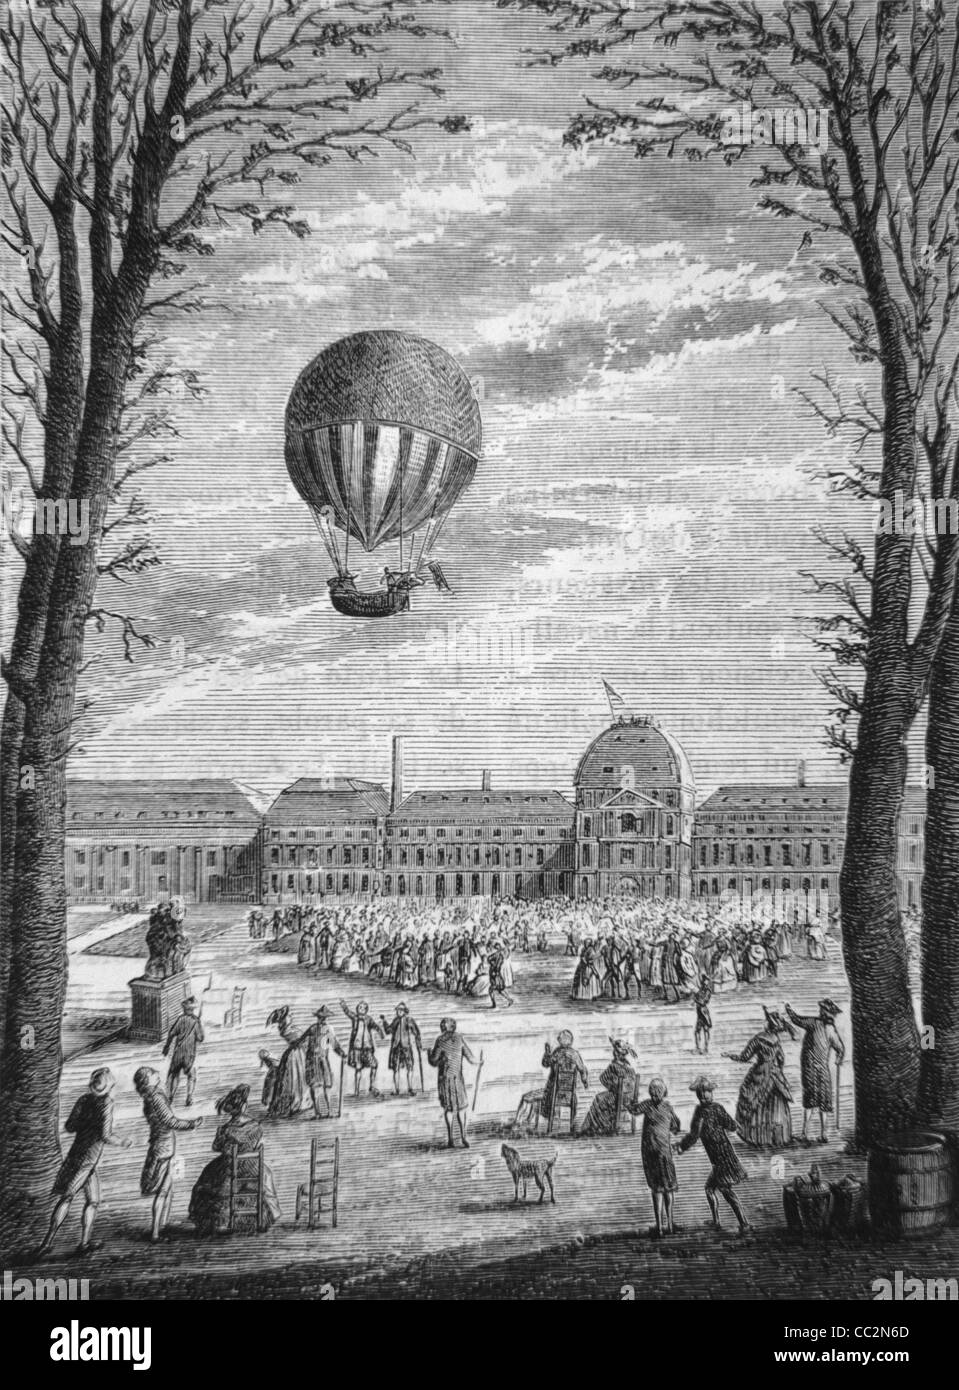 Erste Reise in Wasserstoff-Heißluft-Montgolfier-Ballon über Paris im November 1783. c19. Gravur oder Illustration Stockfoto